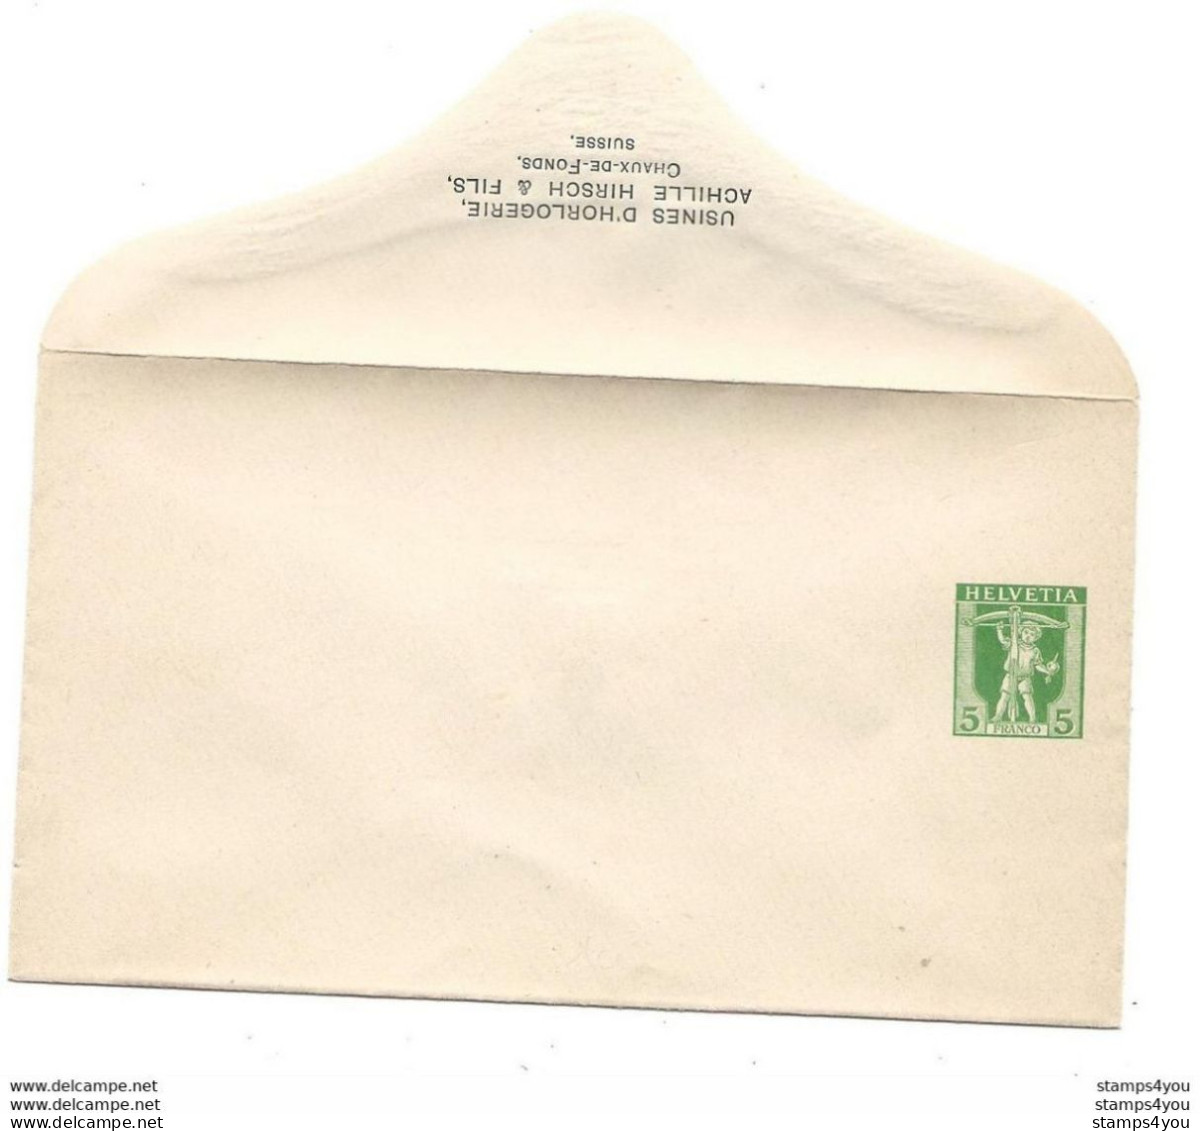 19 - 74 - Entier Postal Privé  Neuf "Usines D'horlogerie Achille Hirsch Chaux-.de-Fonds" - Entiers Postaux